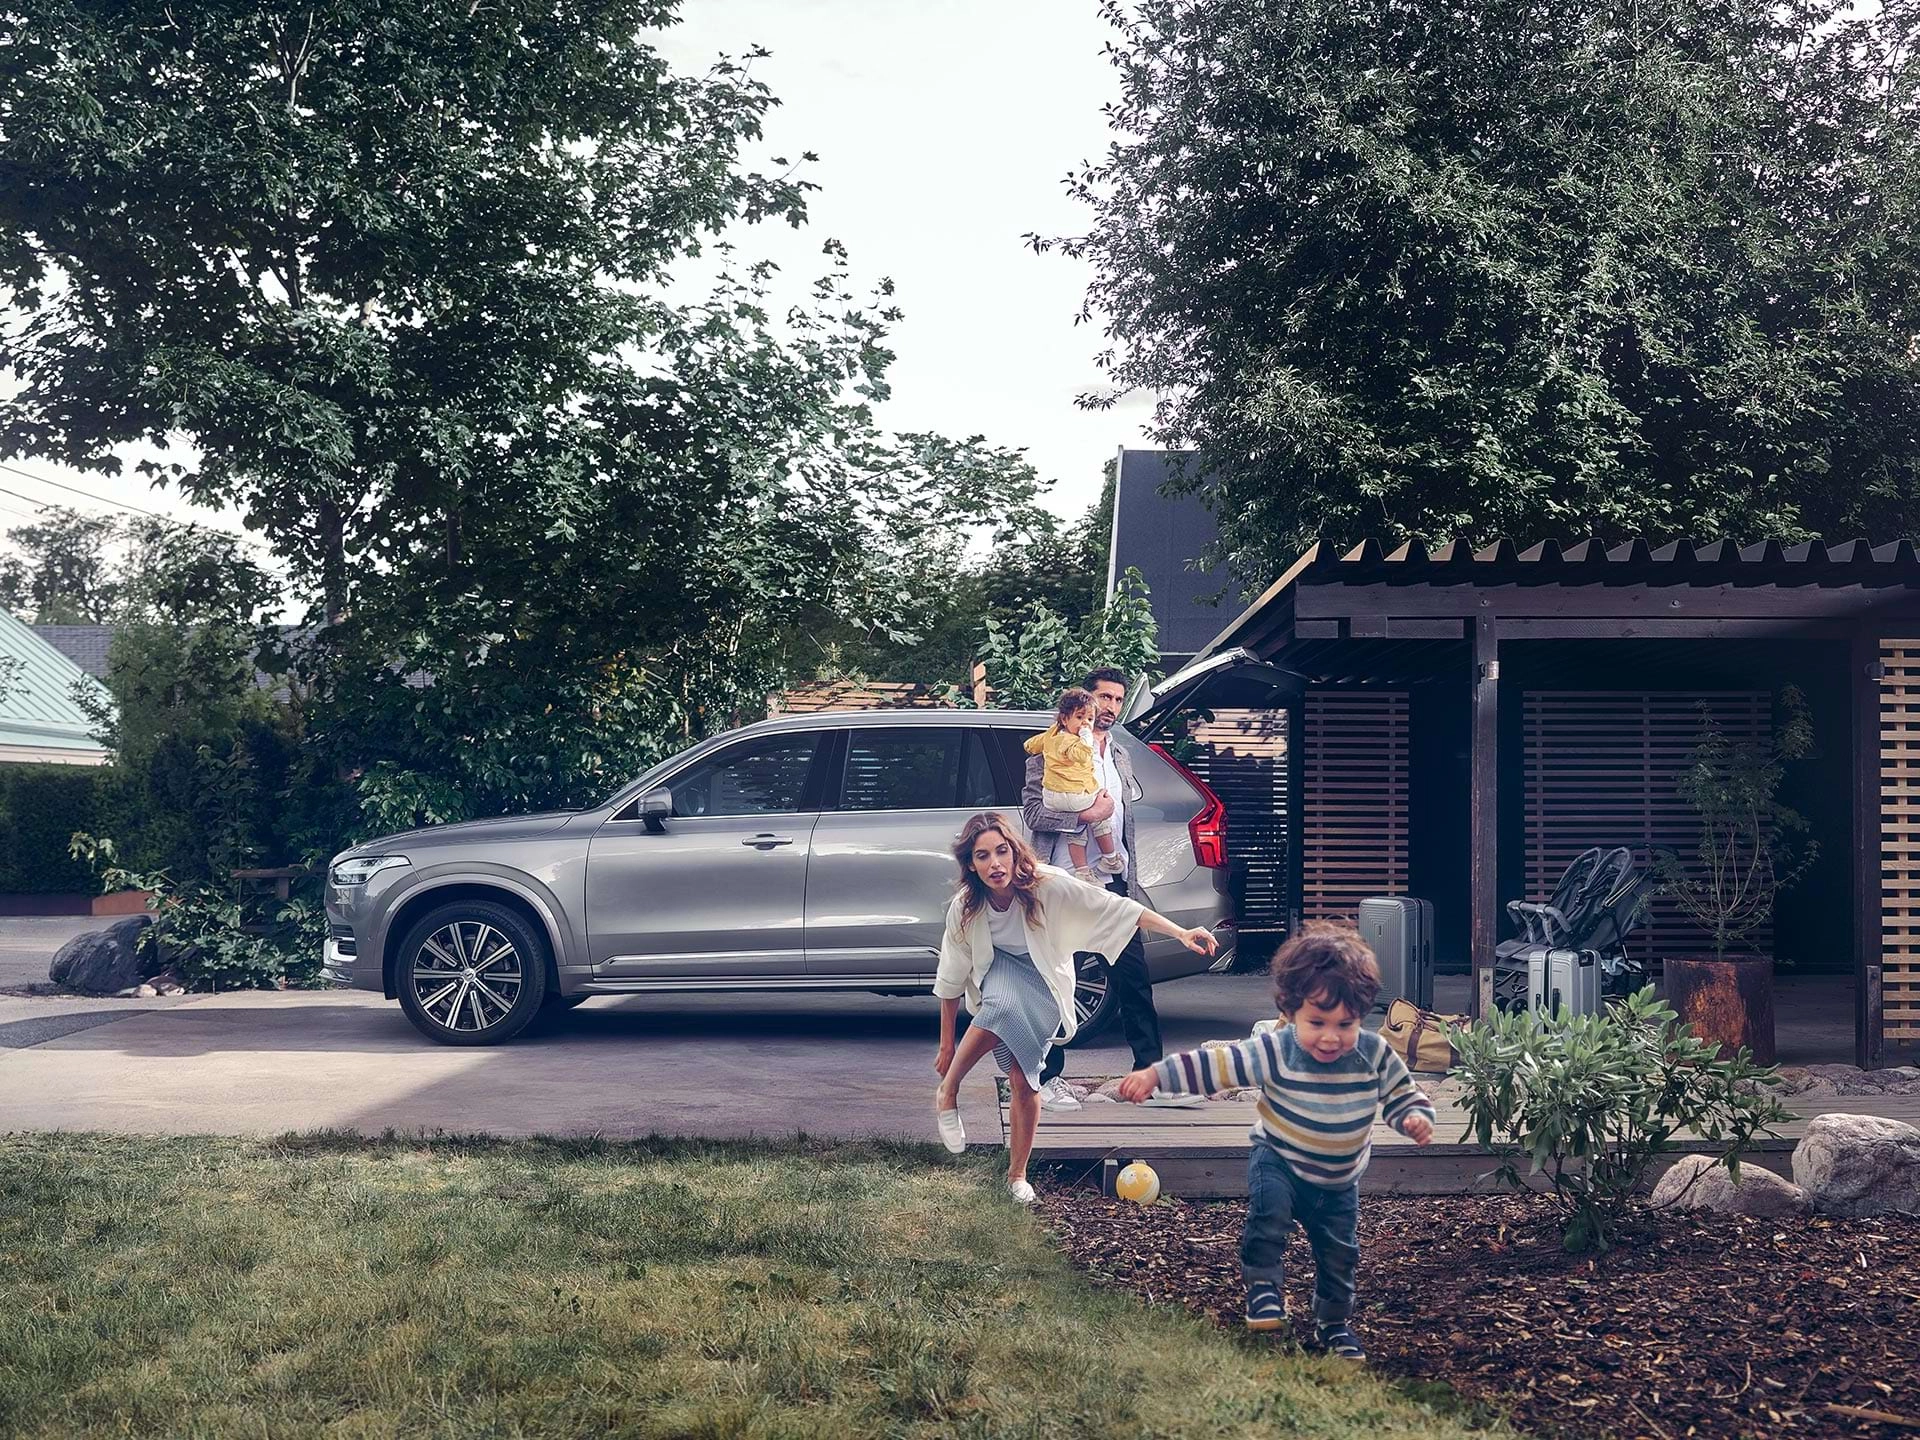 Mientras una familia que vive en un barrio residencial se prepara para un viaje en su SUV Volvo, un niño corre por el jardín perseguido por su madre.